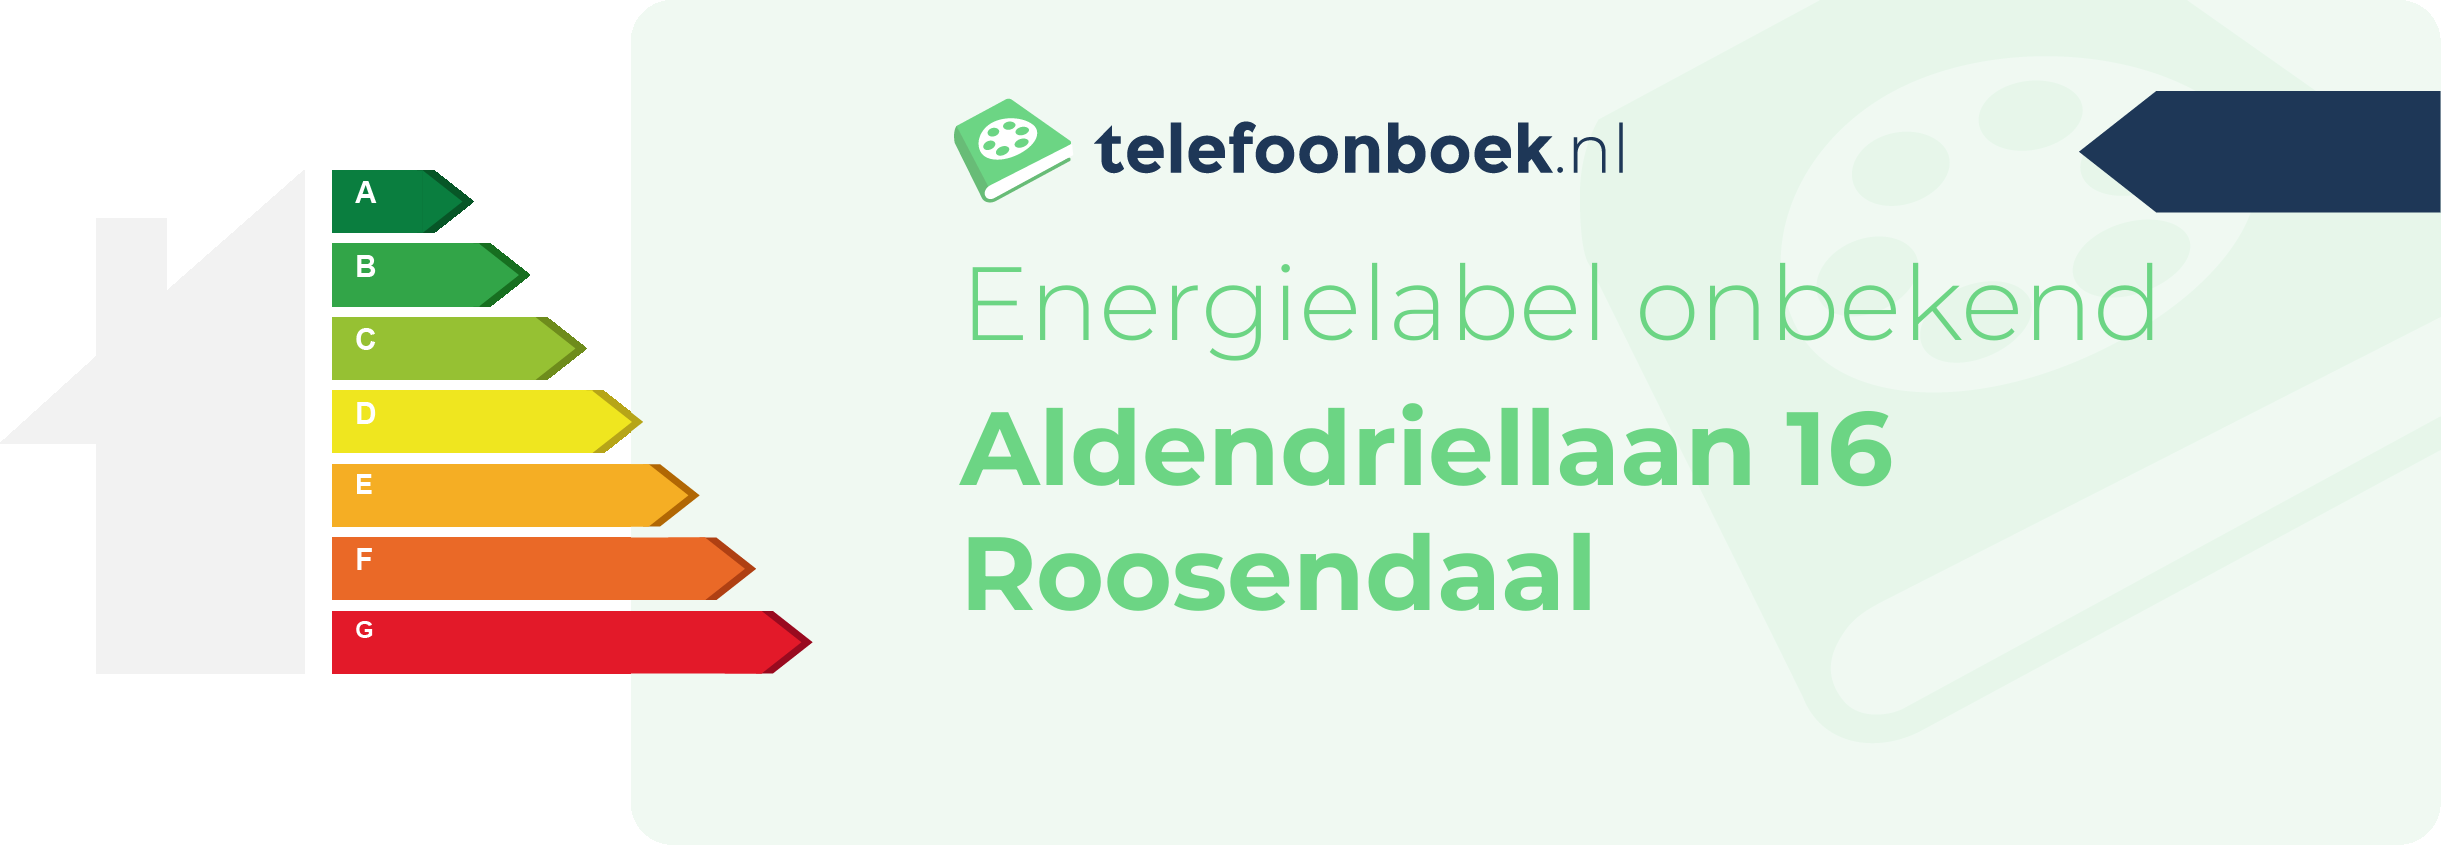 Energielabel Aldendriellaan 16 Roosendaal